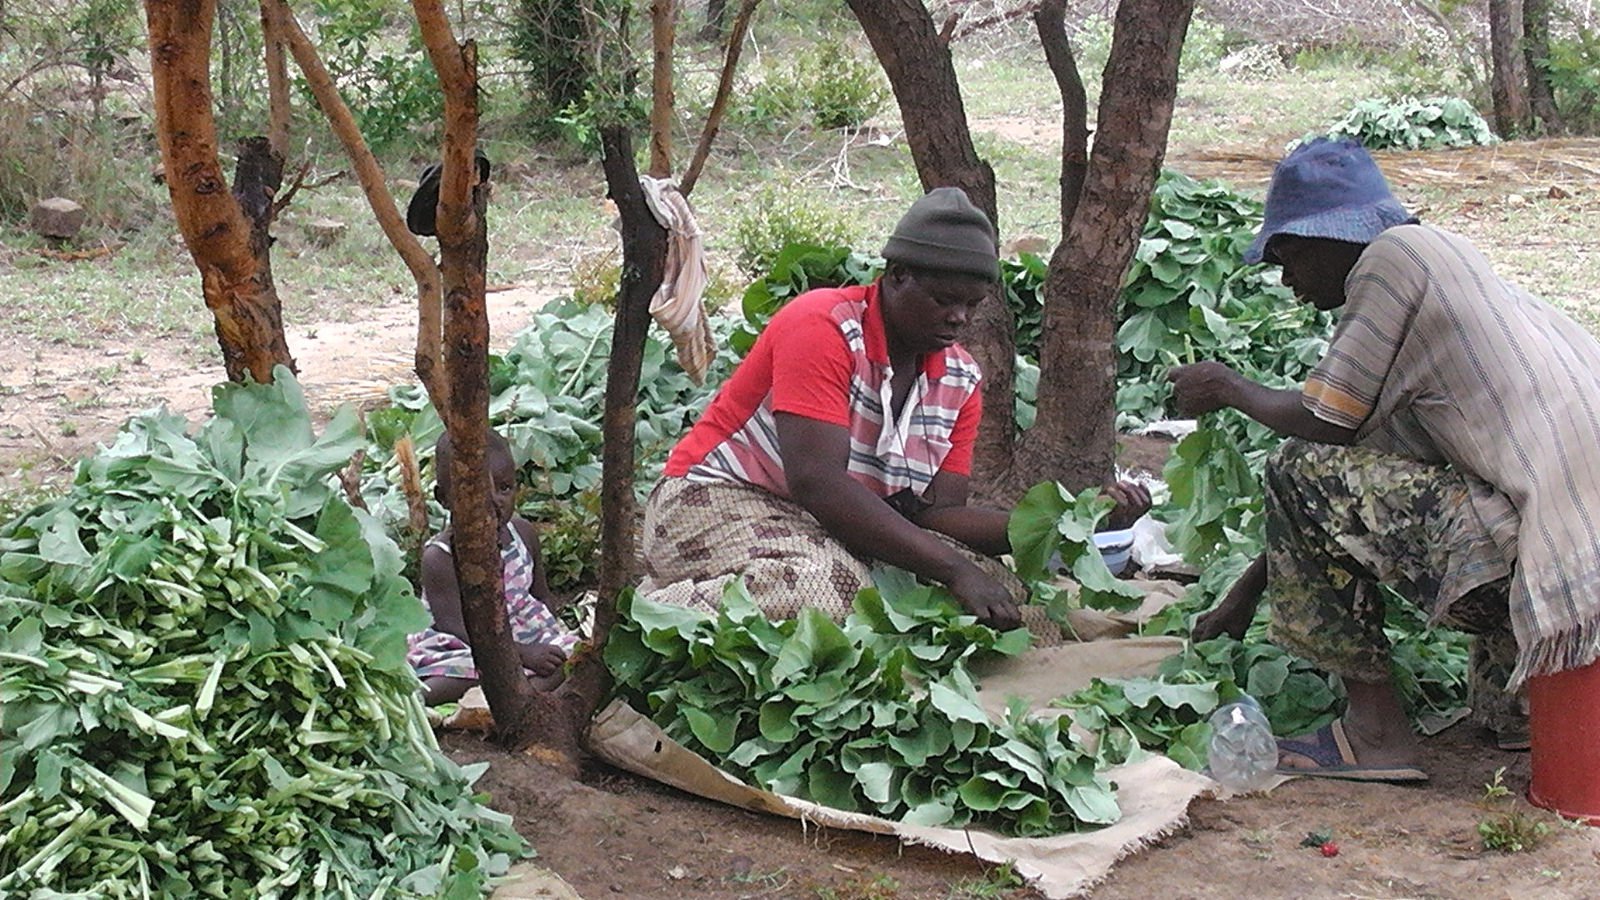 Grading vegetables for market, Zimbabwe, 2012. Photo: Pascal Manyakaidze (CC BY 2.0)